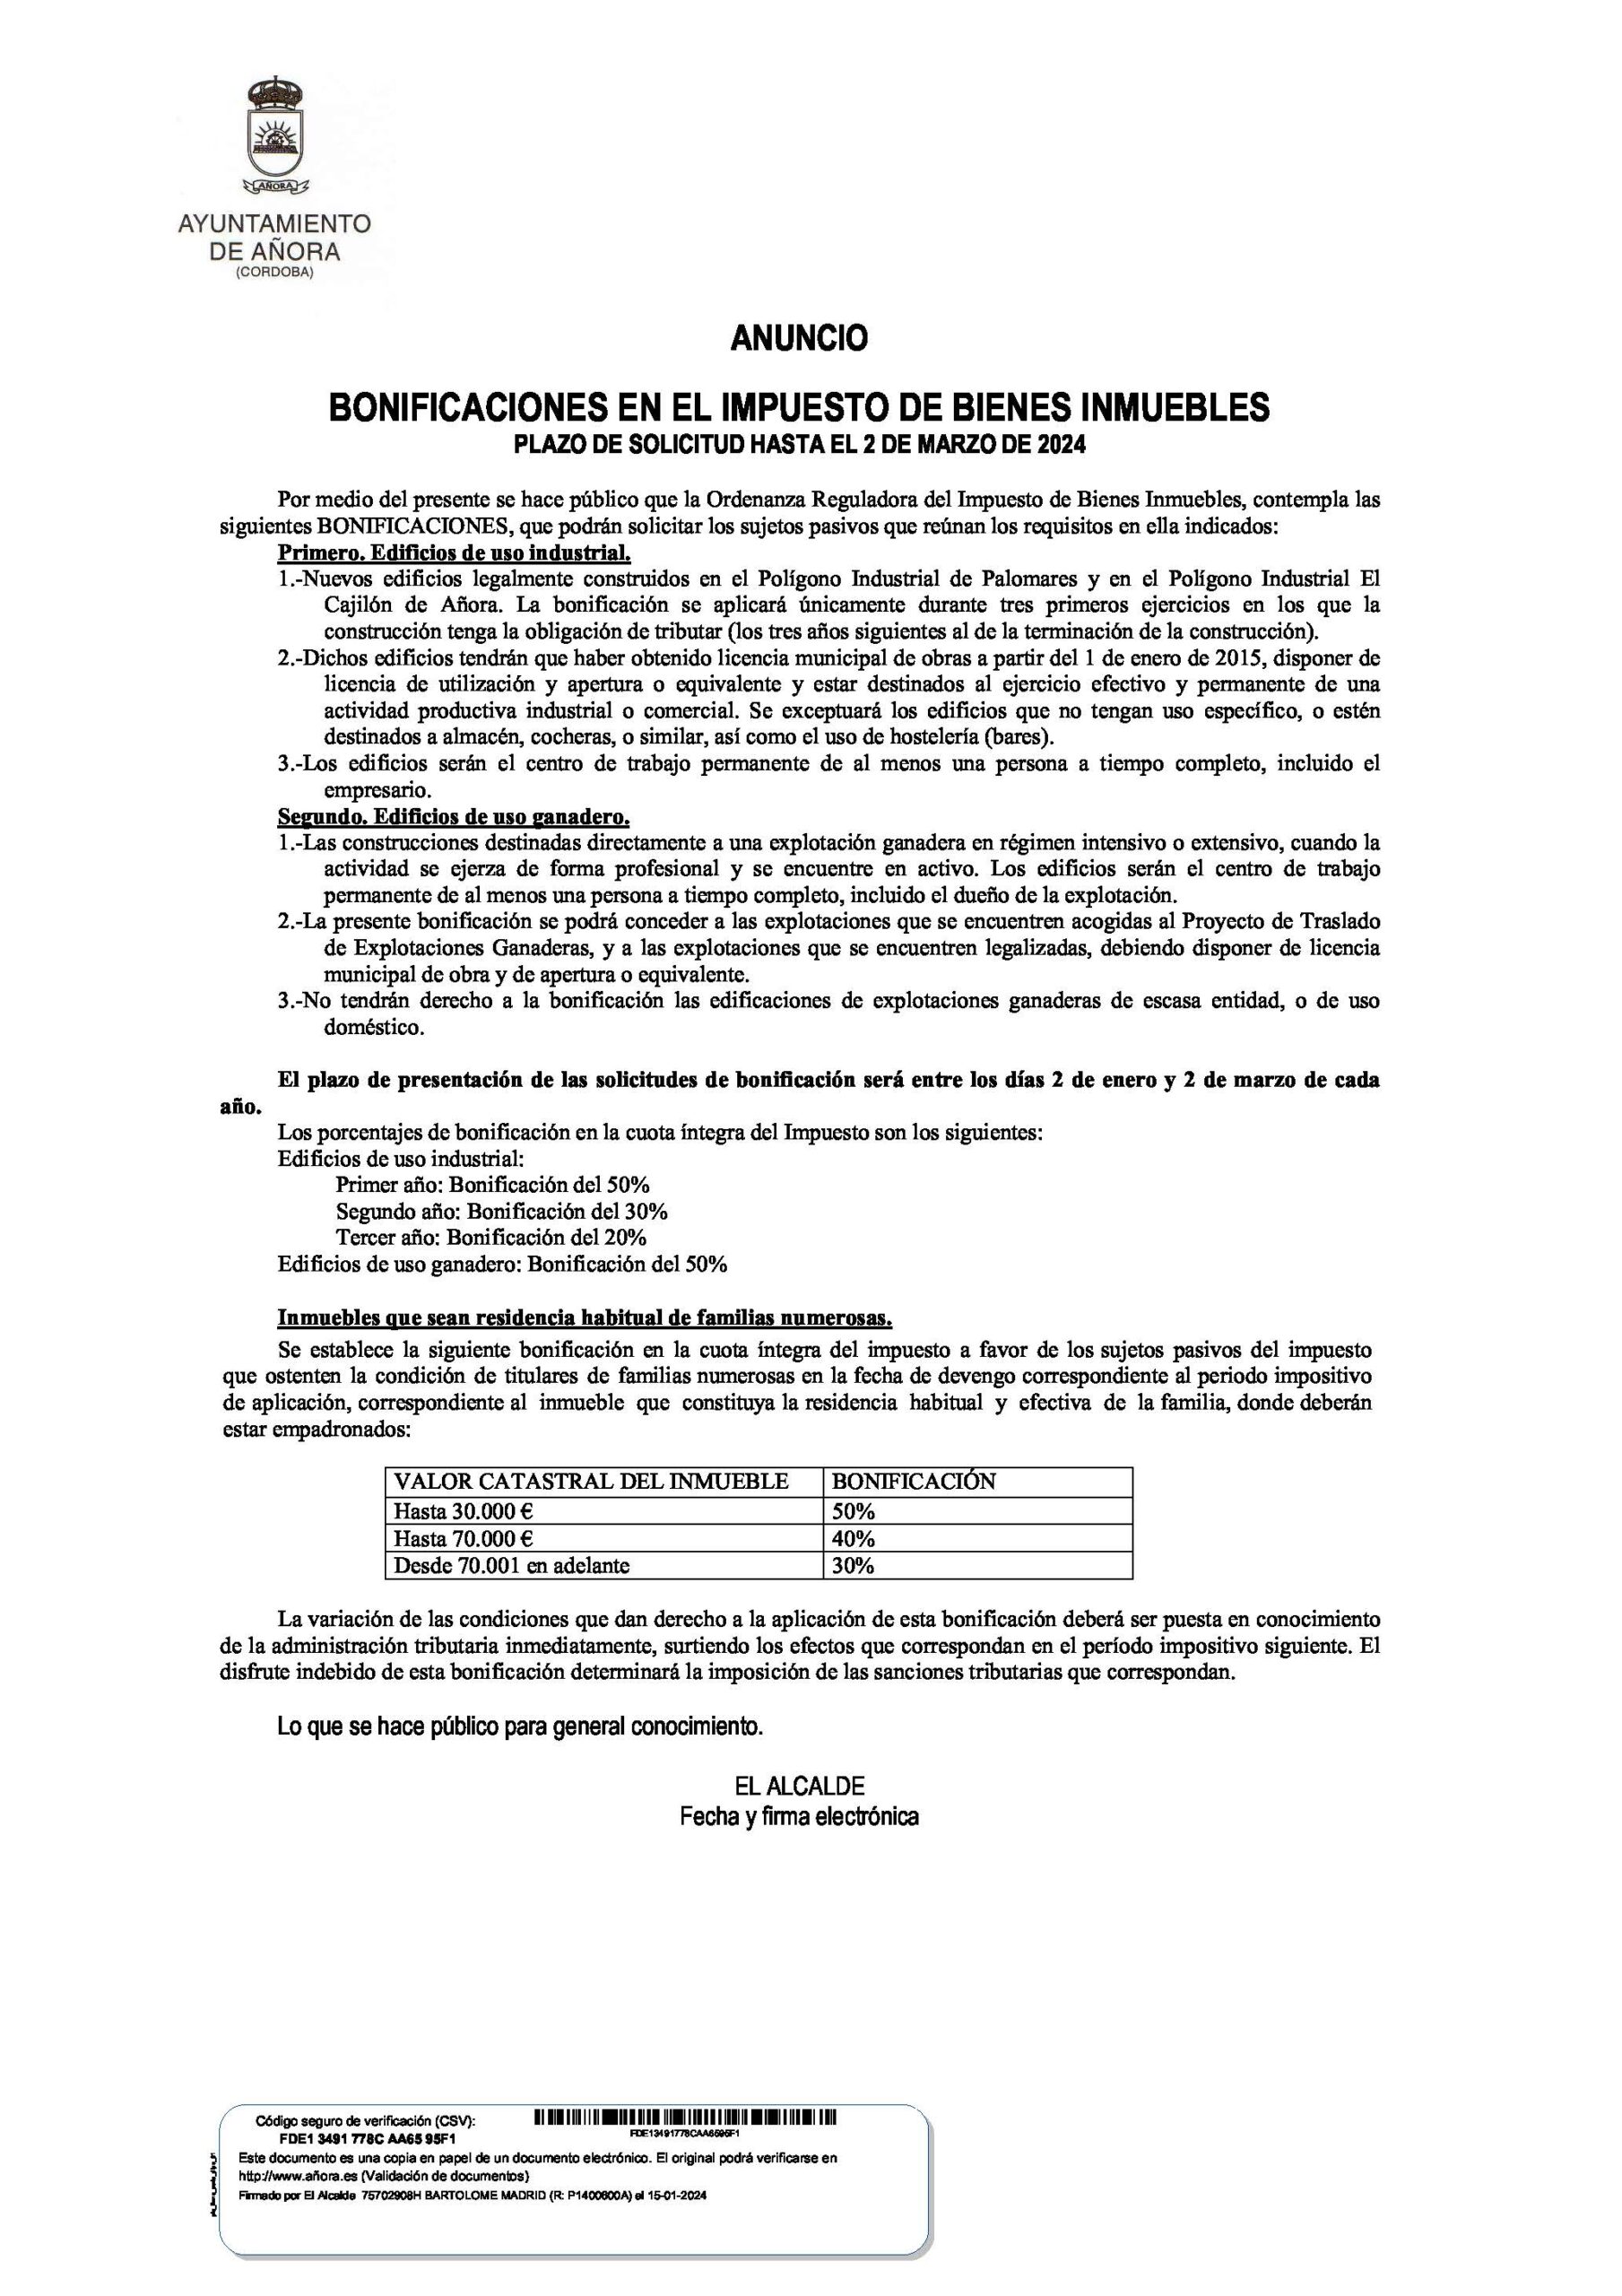 ANUNCIO BONIFICACIONES EN EL IMPUESTO DE BIENES INMUEBLES 2024